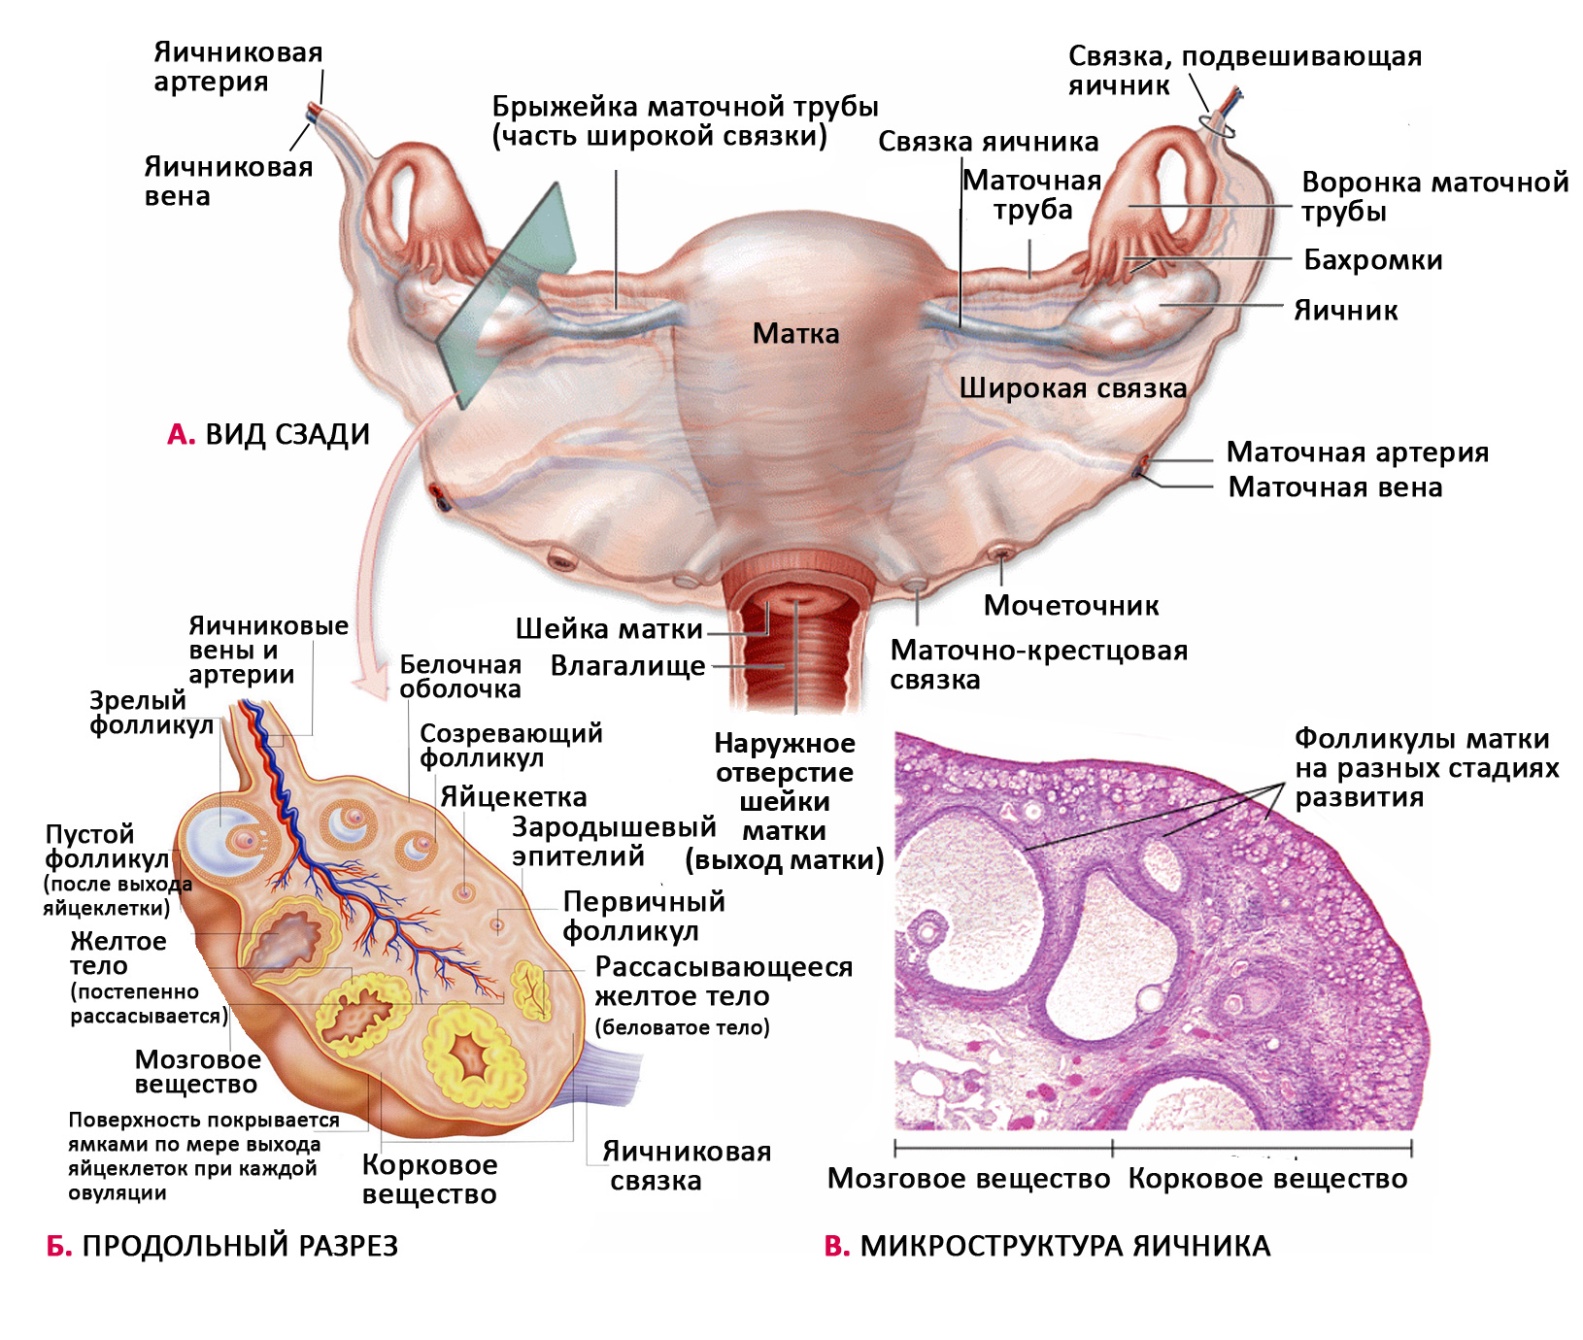 Строение наружных органов женщины. Матка придатки яичники анатомия. Женская половая система яичники. Придаток яичника и околояичник. Яичник анатомия строение внешнее.